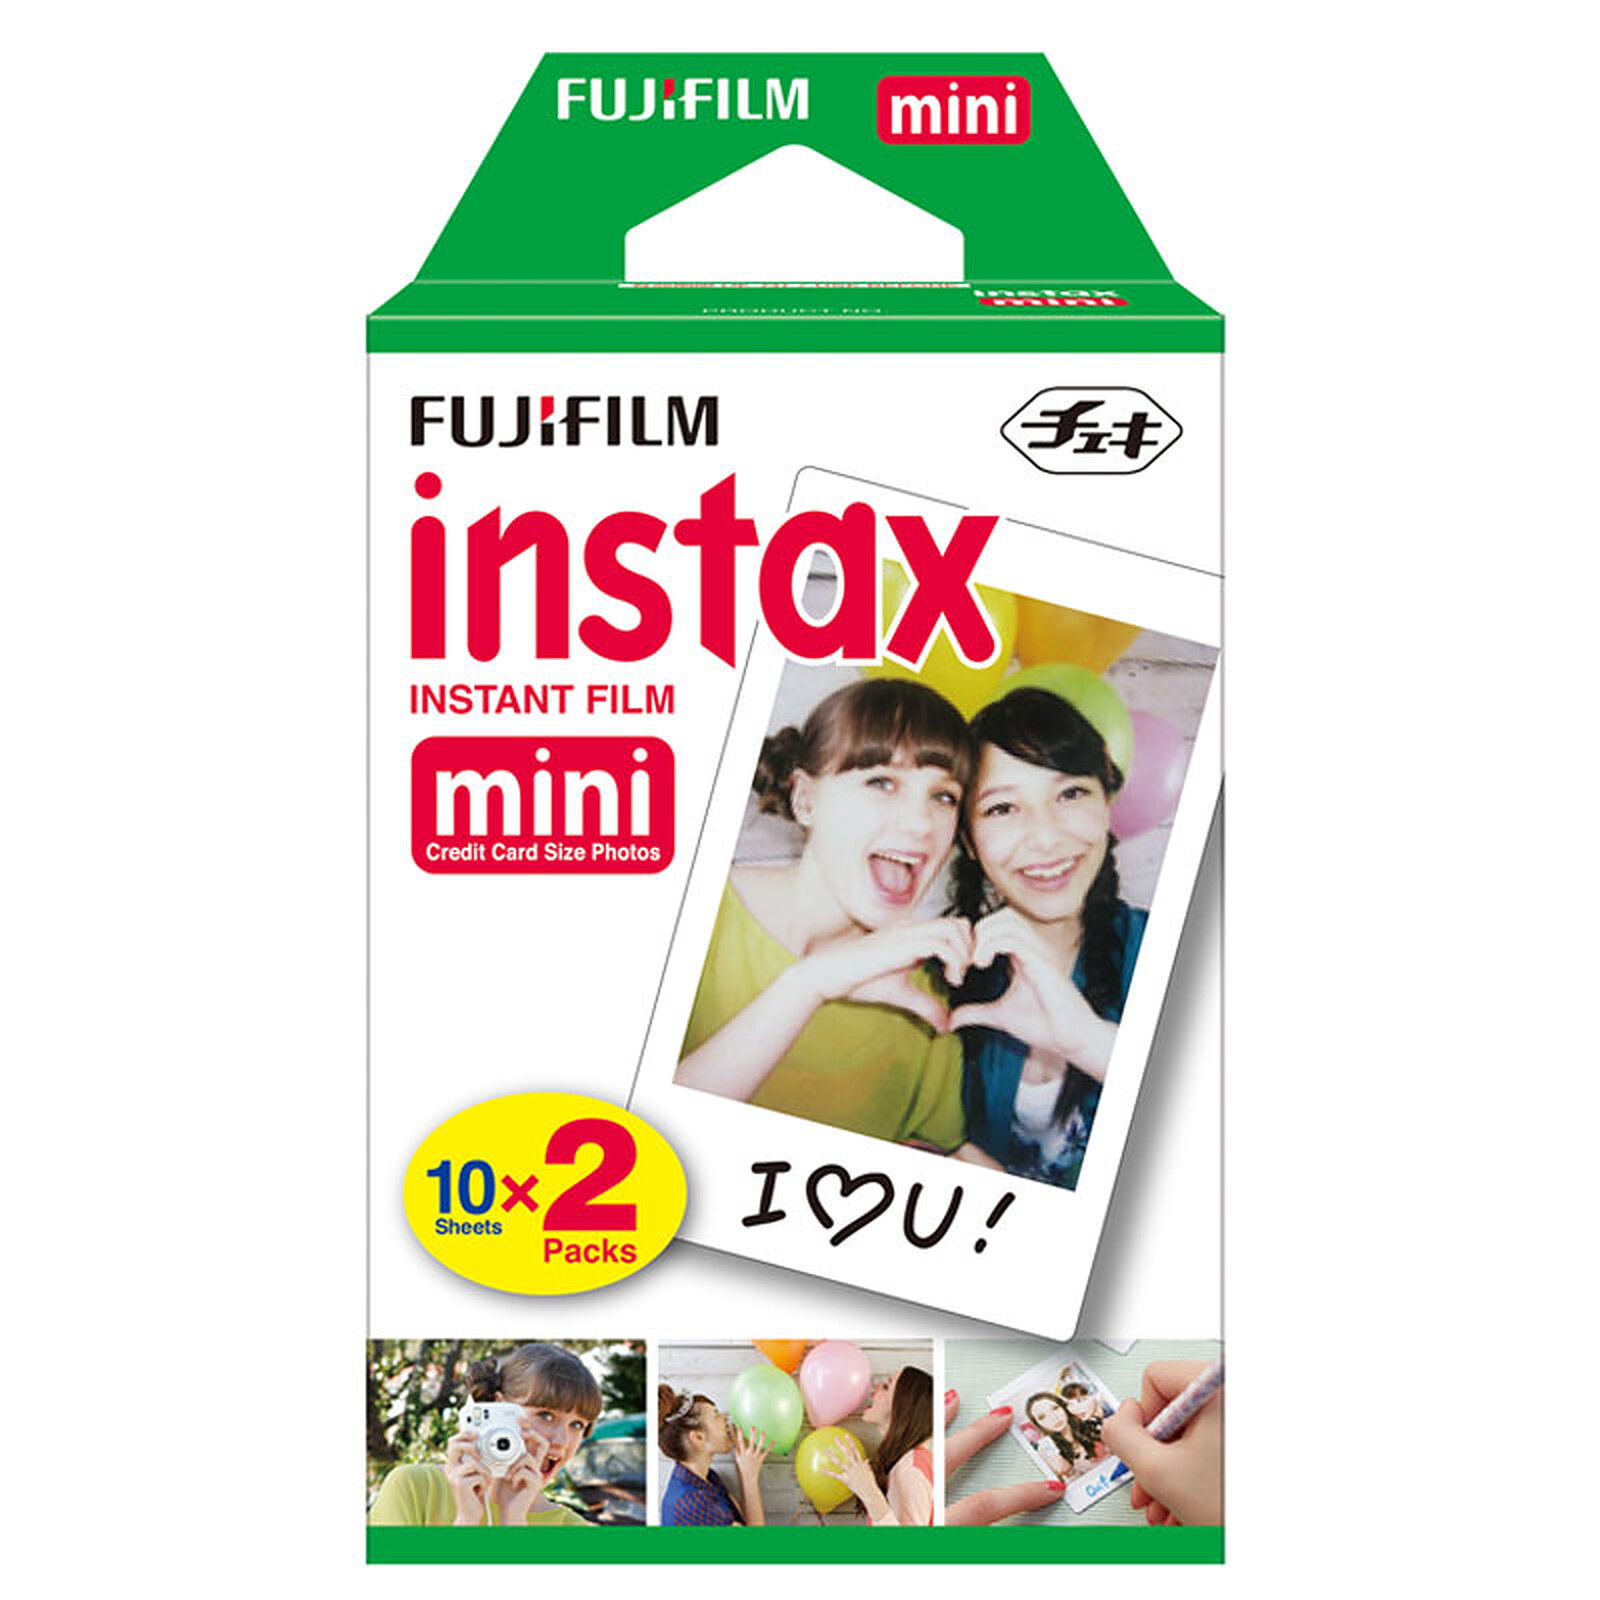 Fujifilm film instax wide bipack de 2x 10 vues